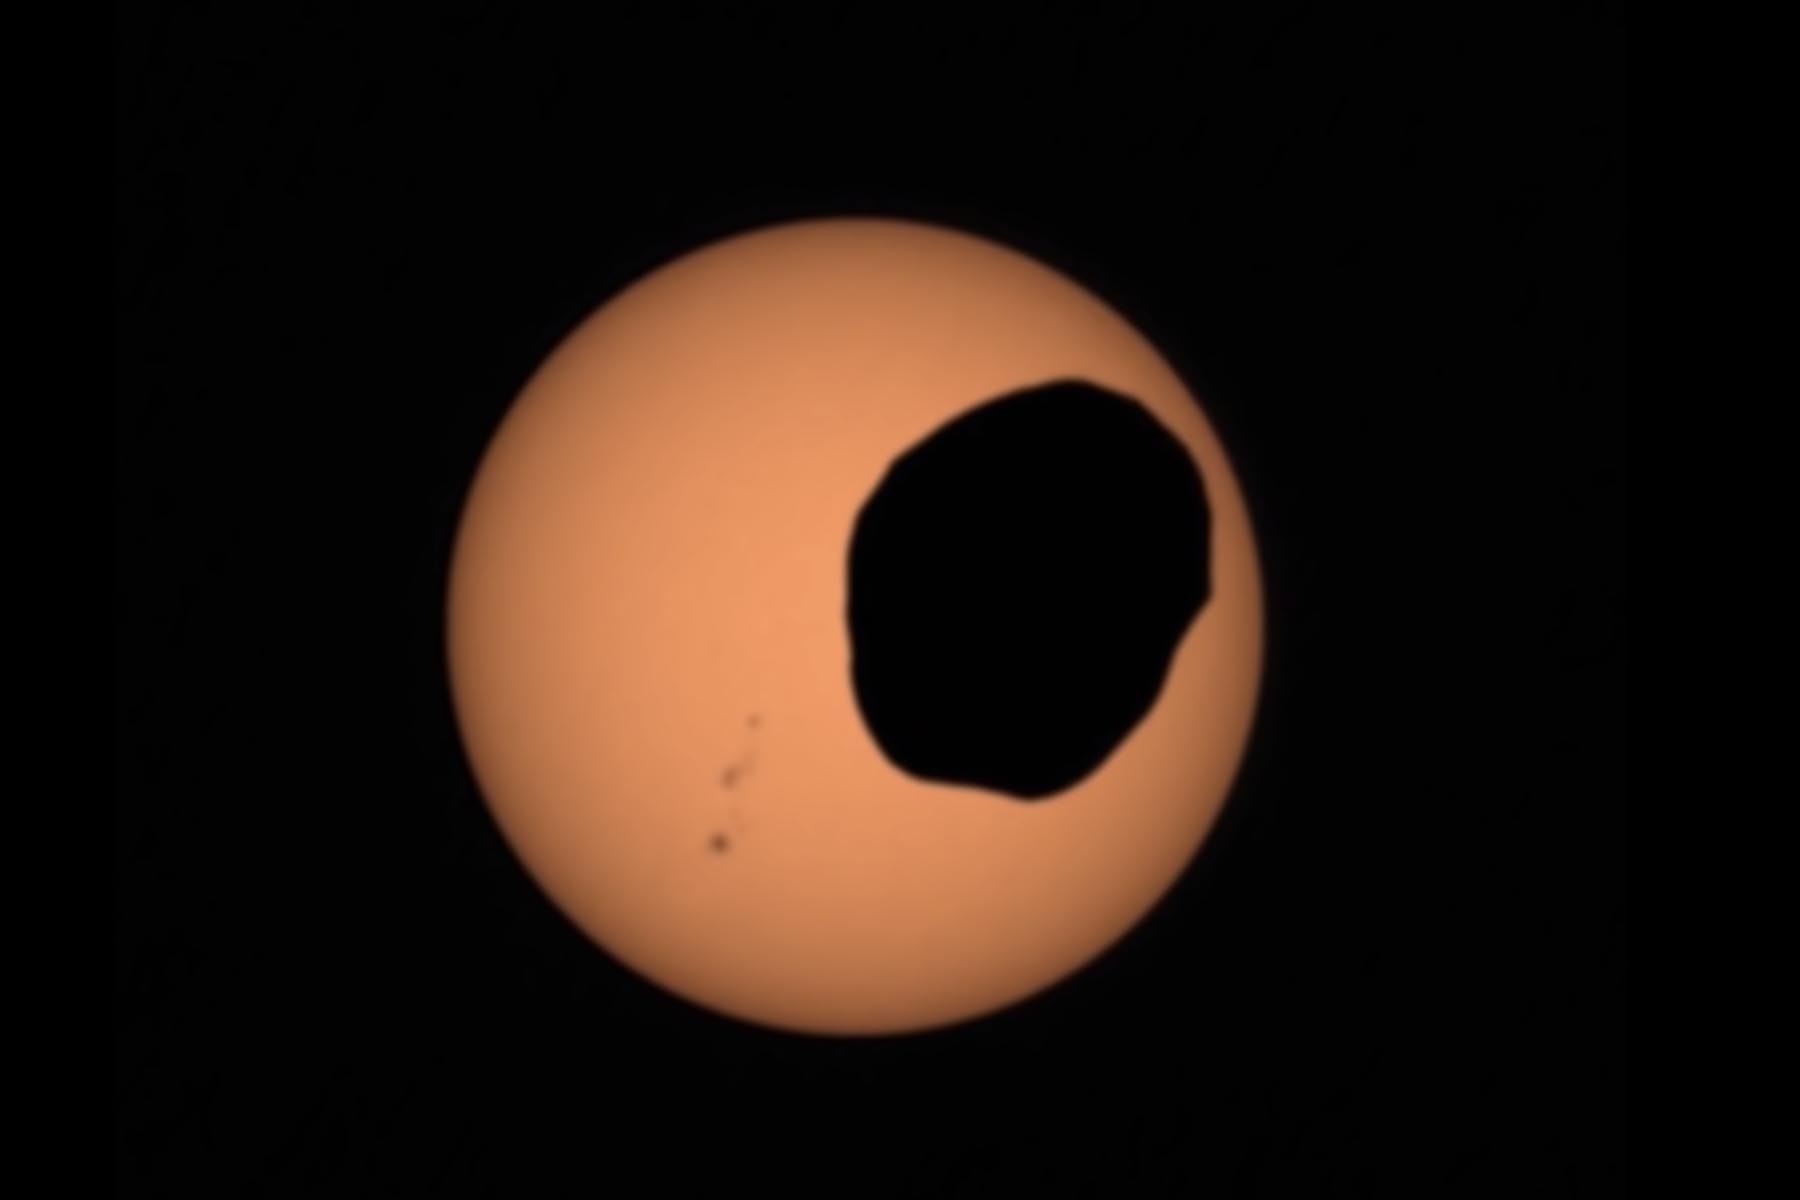 El rover Perseverance Mars de la NASA usó su cámara Mastcam-Z para grabar un vídeo de Fobos, una de las dos lunas de Marte, eclipsando al Sol. Es la observación más ampliada y con mayor velocidad de fotogramas de un eclipse solar de Fobos jamás tomada desde la superficie marciana. Foto:  NASA/JPL-Caltech/ASU/MSSS/SSI.